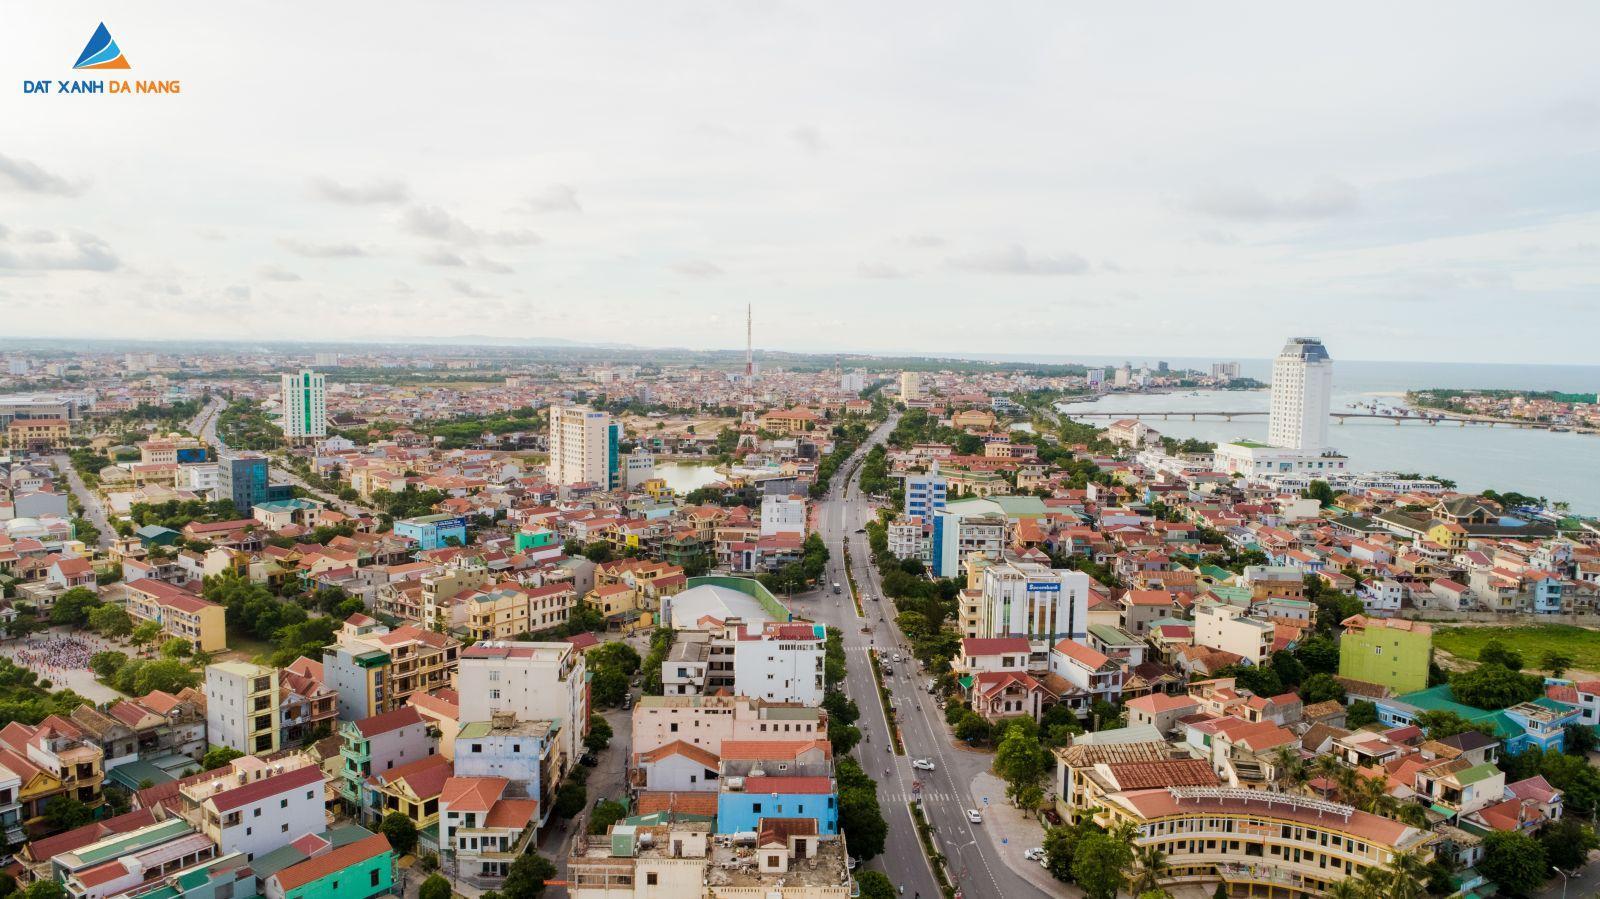 [GÓC CẬP NHẬT] DỰ ÁN KHU DÂN CƯ ĐÔNG NAM LÊ LỢI THÁNG 08/2019 - Viet Nam Smart City